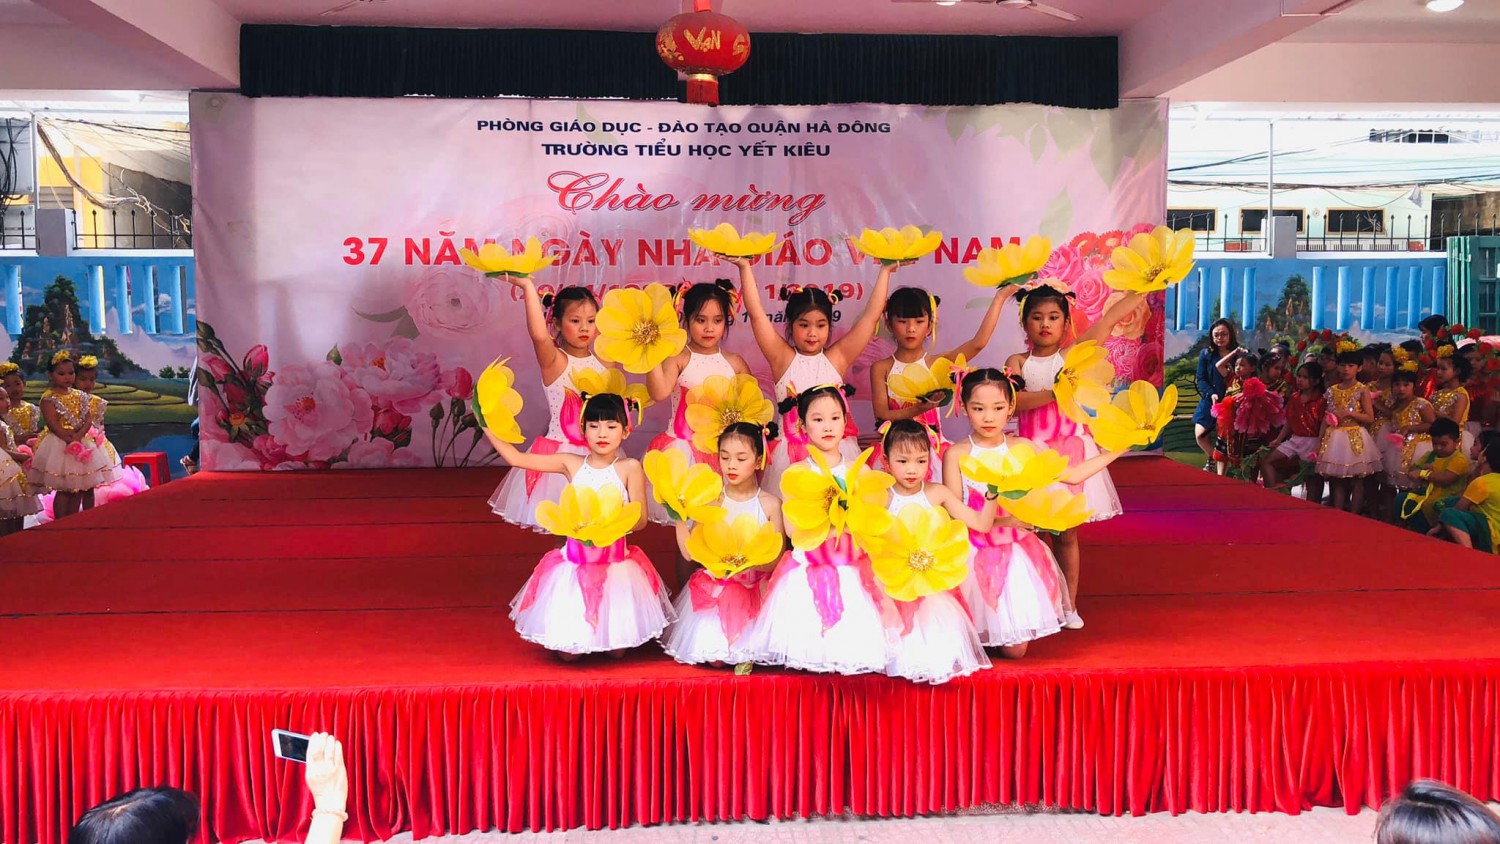 Chào mừng 37 năm ngày nhà giáo Việt Nam (20/11/1982 - 20/11/2019)